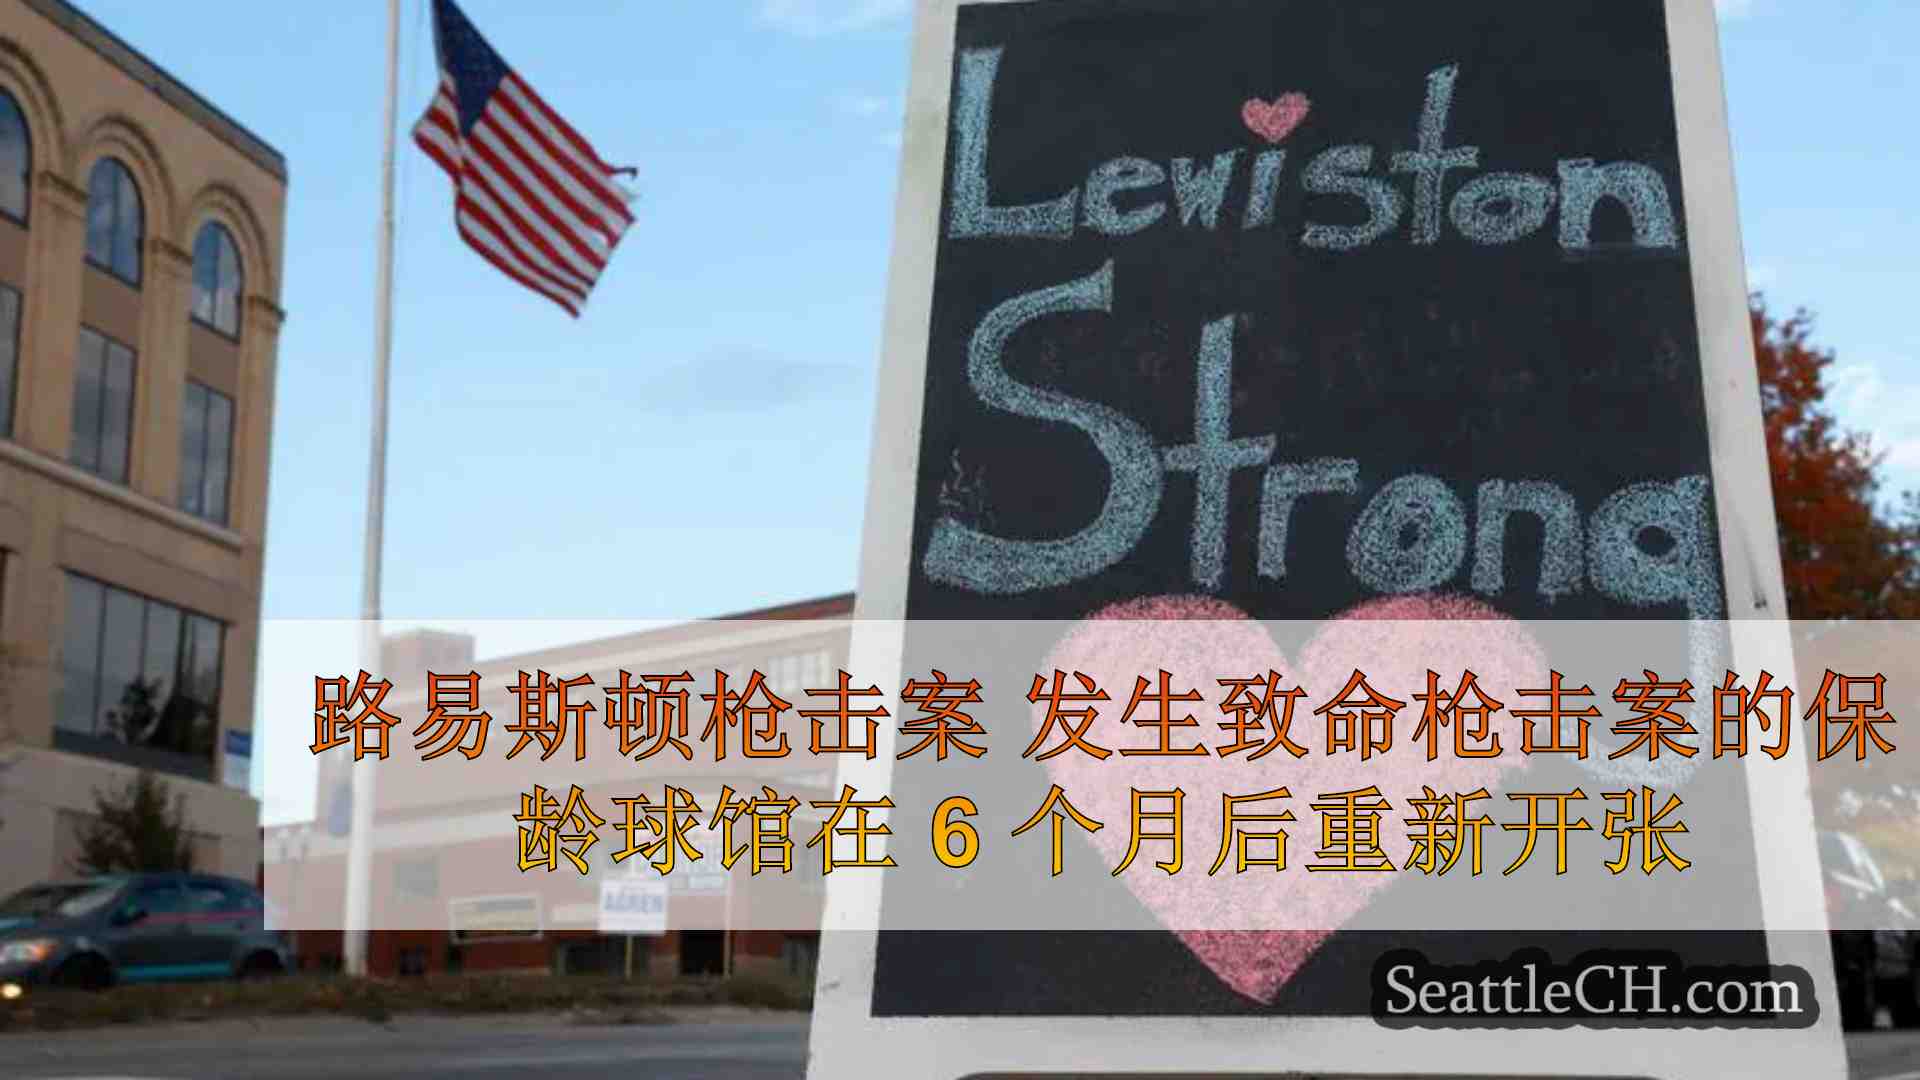 路易斯顿枪击案 发生致命枪击案的保龄球馆在 6 个月后重新开张